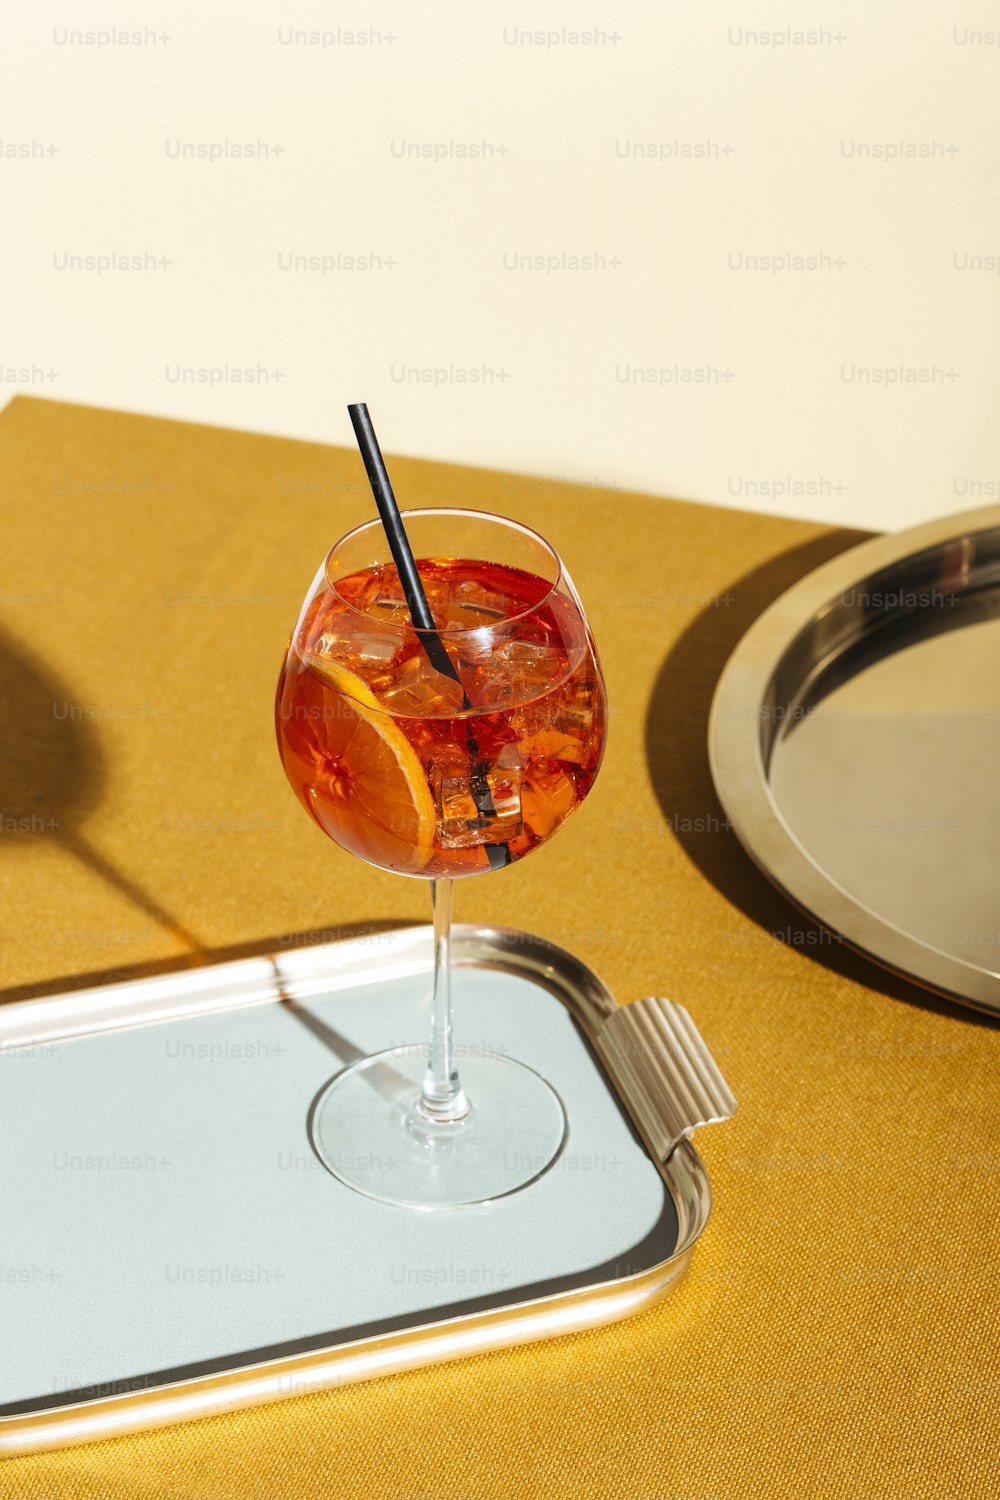 Spritz veneziano, un cóctel de aperitivo con Prosecco o vino espumoso blanco, amargo, soda, hielo y una rodaja de naranja, en un calix sobre una mesa, estilo pop graphic